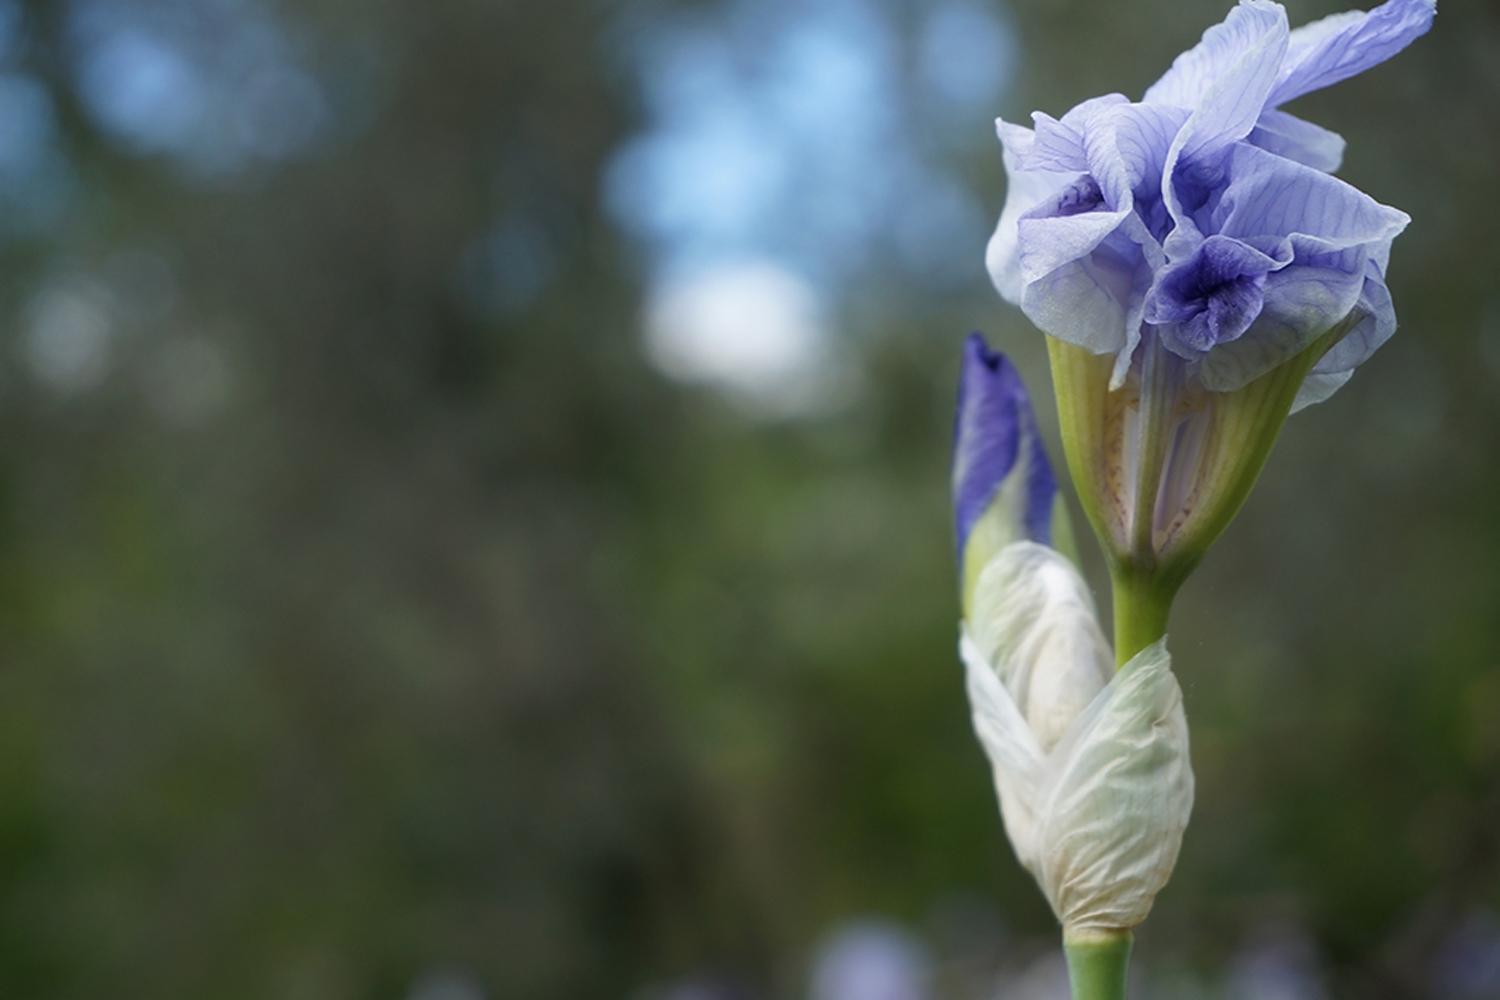 Giaggioli (Irisblumen) wurden zur Parfümherstellung gepflanzt